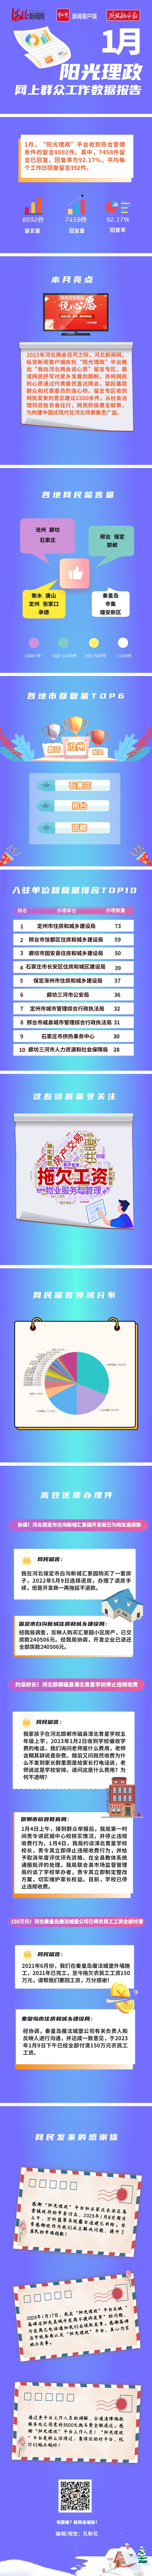 河北新闻网、纵览新闻“阳光理政”平台1月回复留言7458件 回复率达92.17%